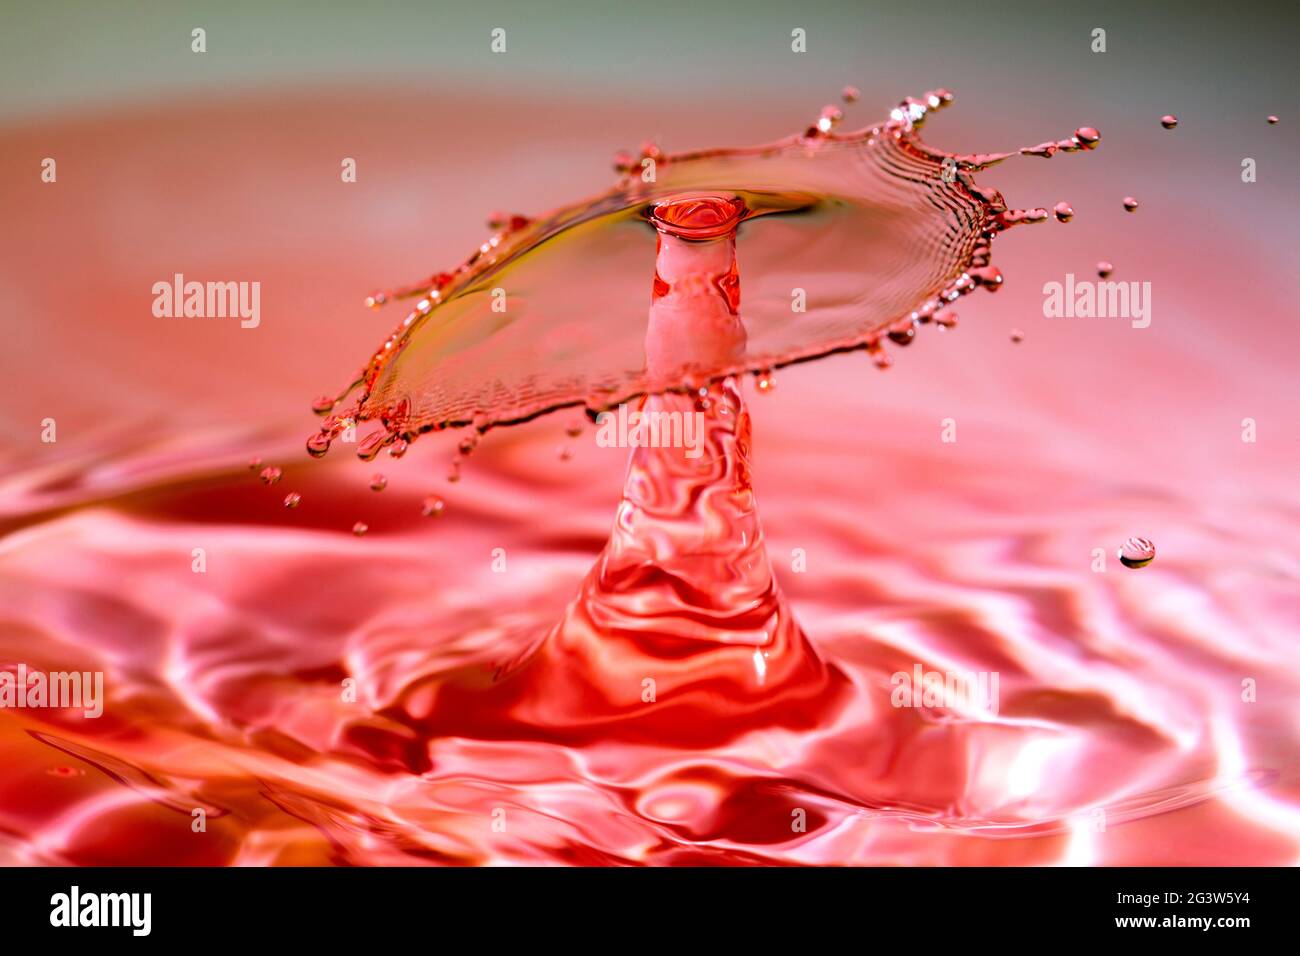 Wasserspritzer-Krone, die nach einem Fallaufprall auf Rot entsteht Stockfoto